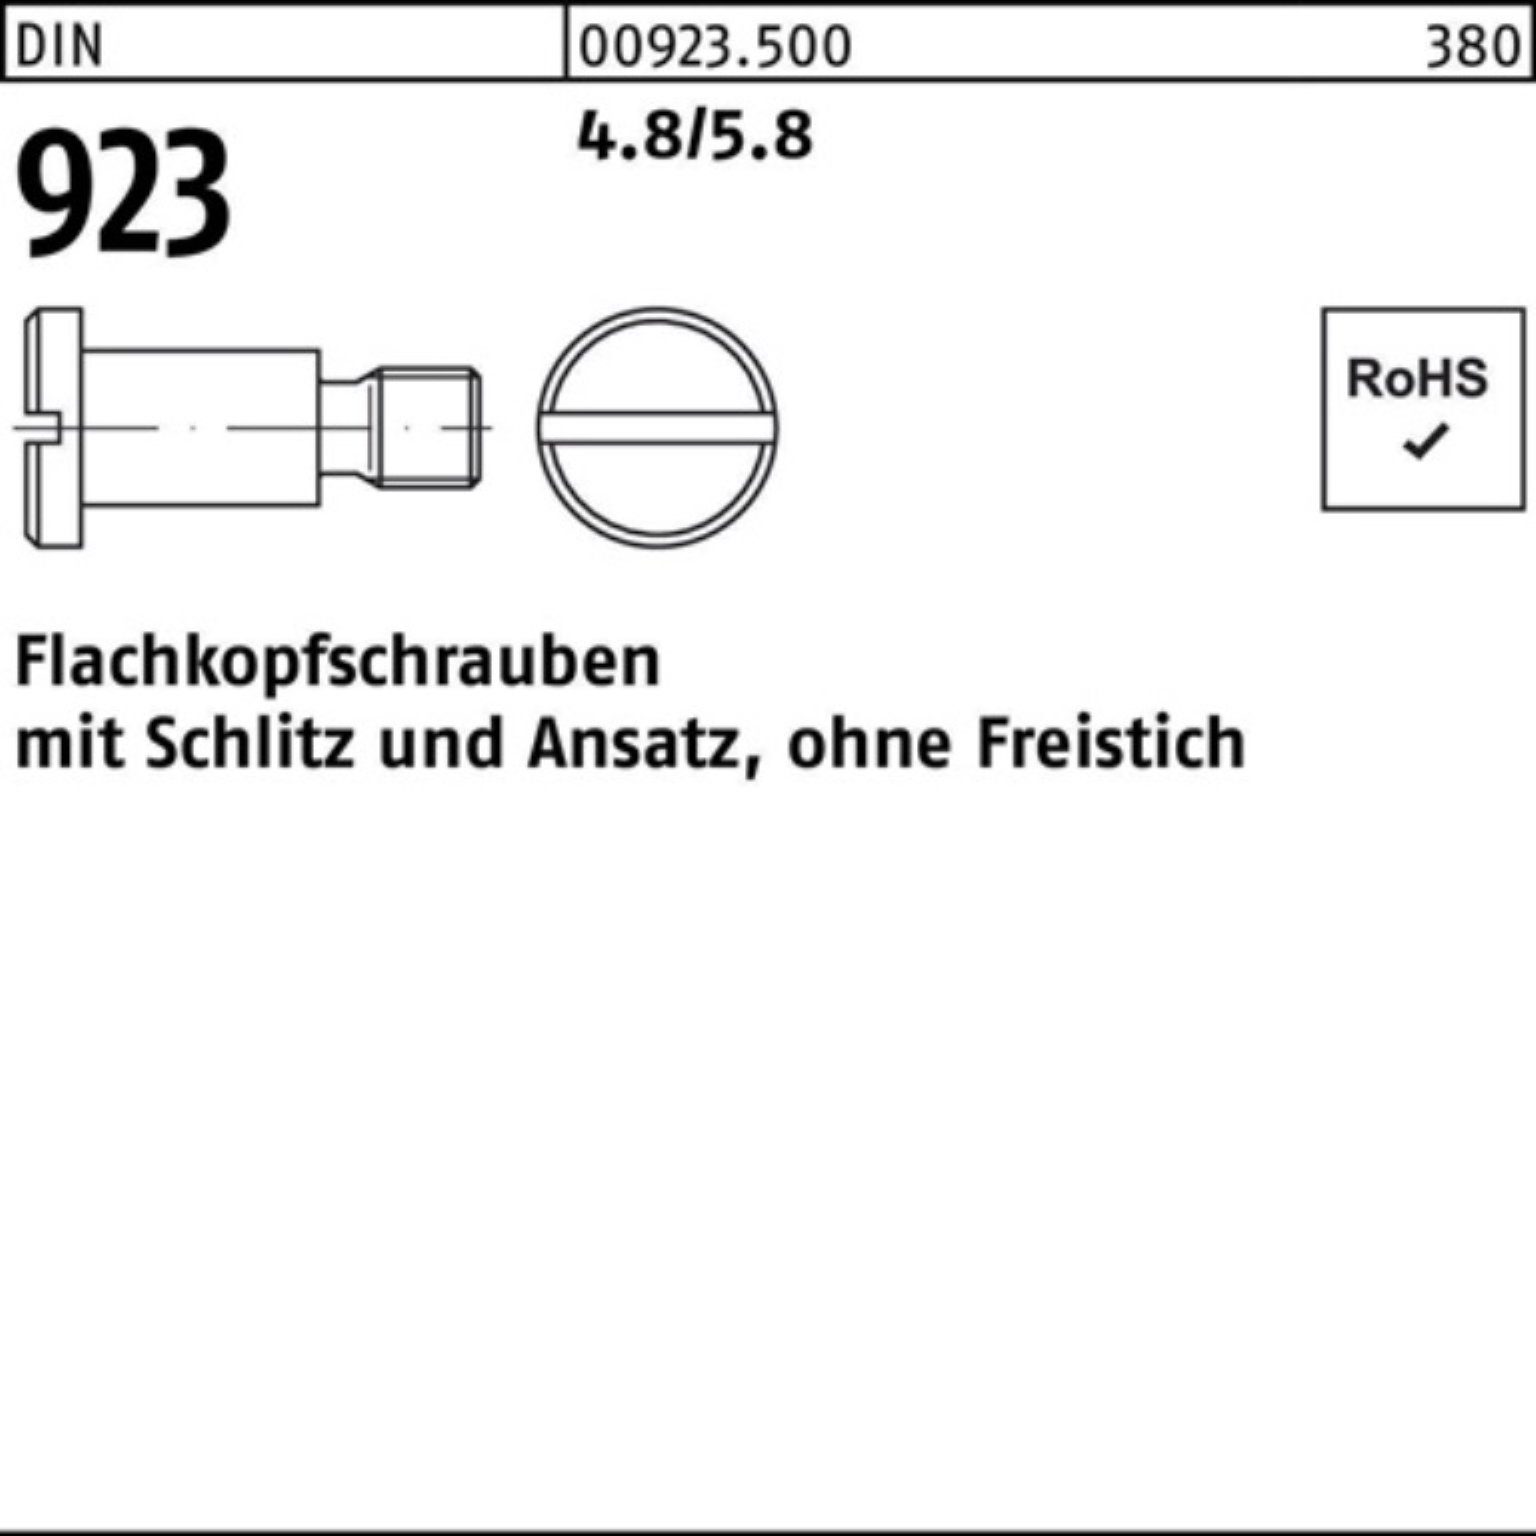 Reyher Schraube 100er Pack Flachkopfschraube DIN 923 Schlitz/Ansatz M3x10x 4,5 4.8/5.8